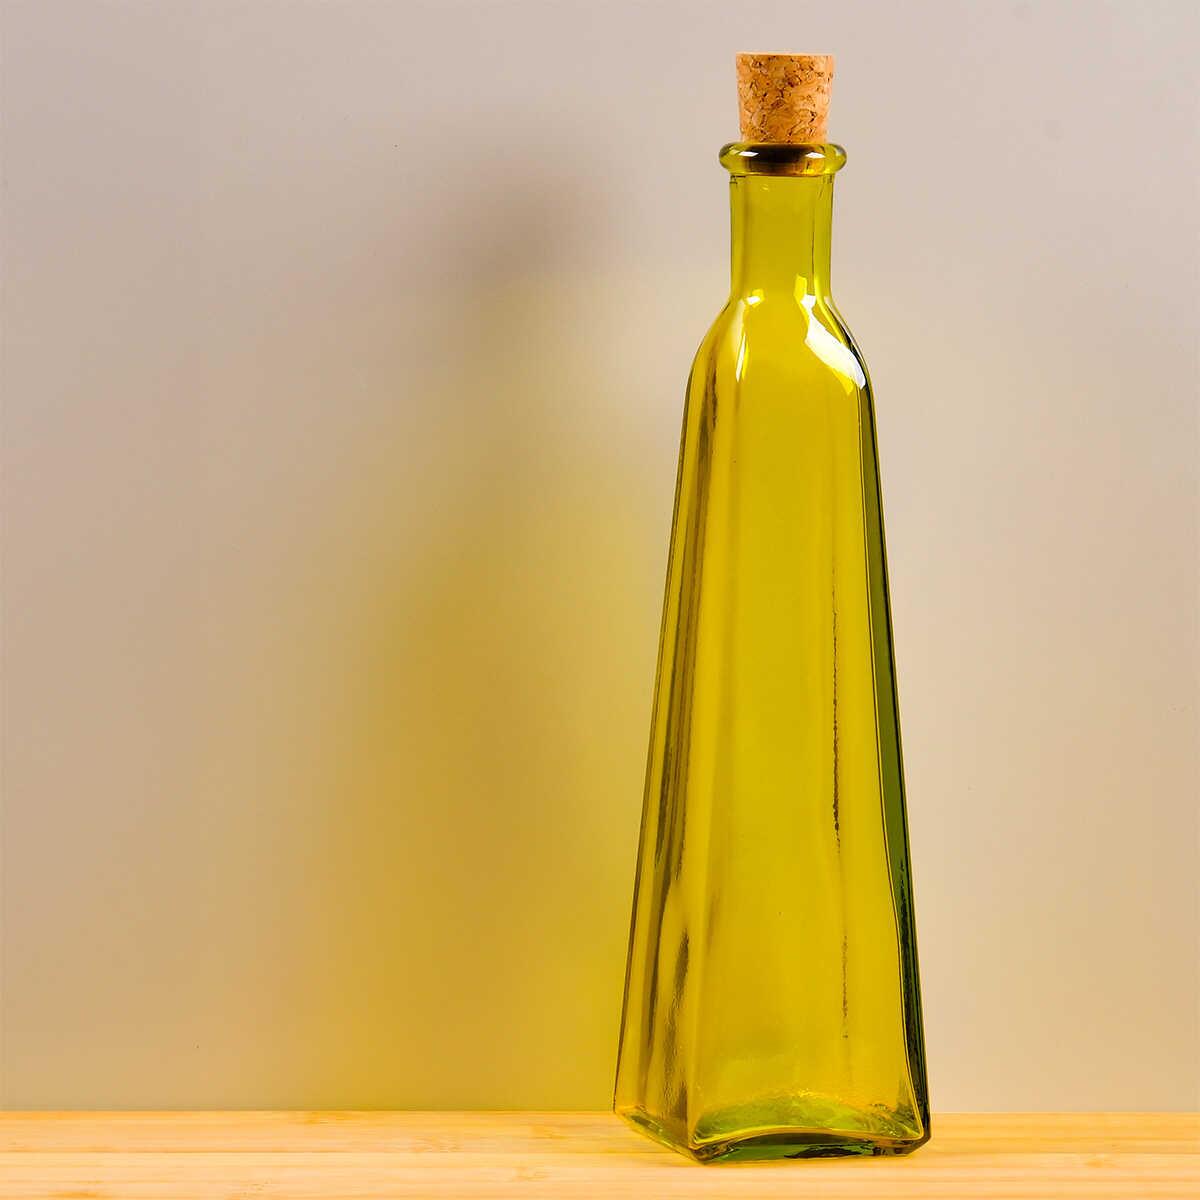 Sanmiguel Piramide Oil Bottle 350 cc 2